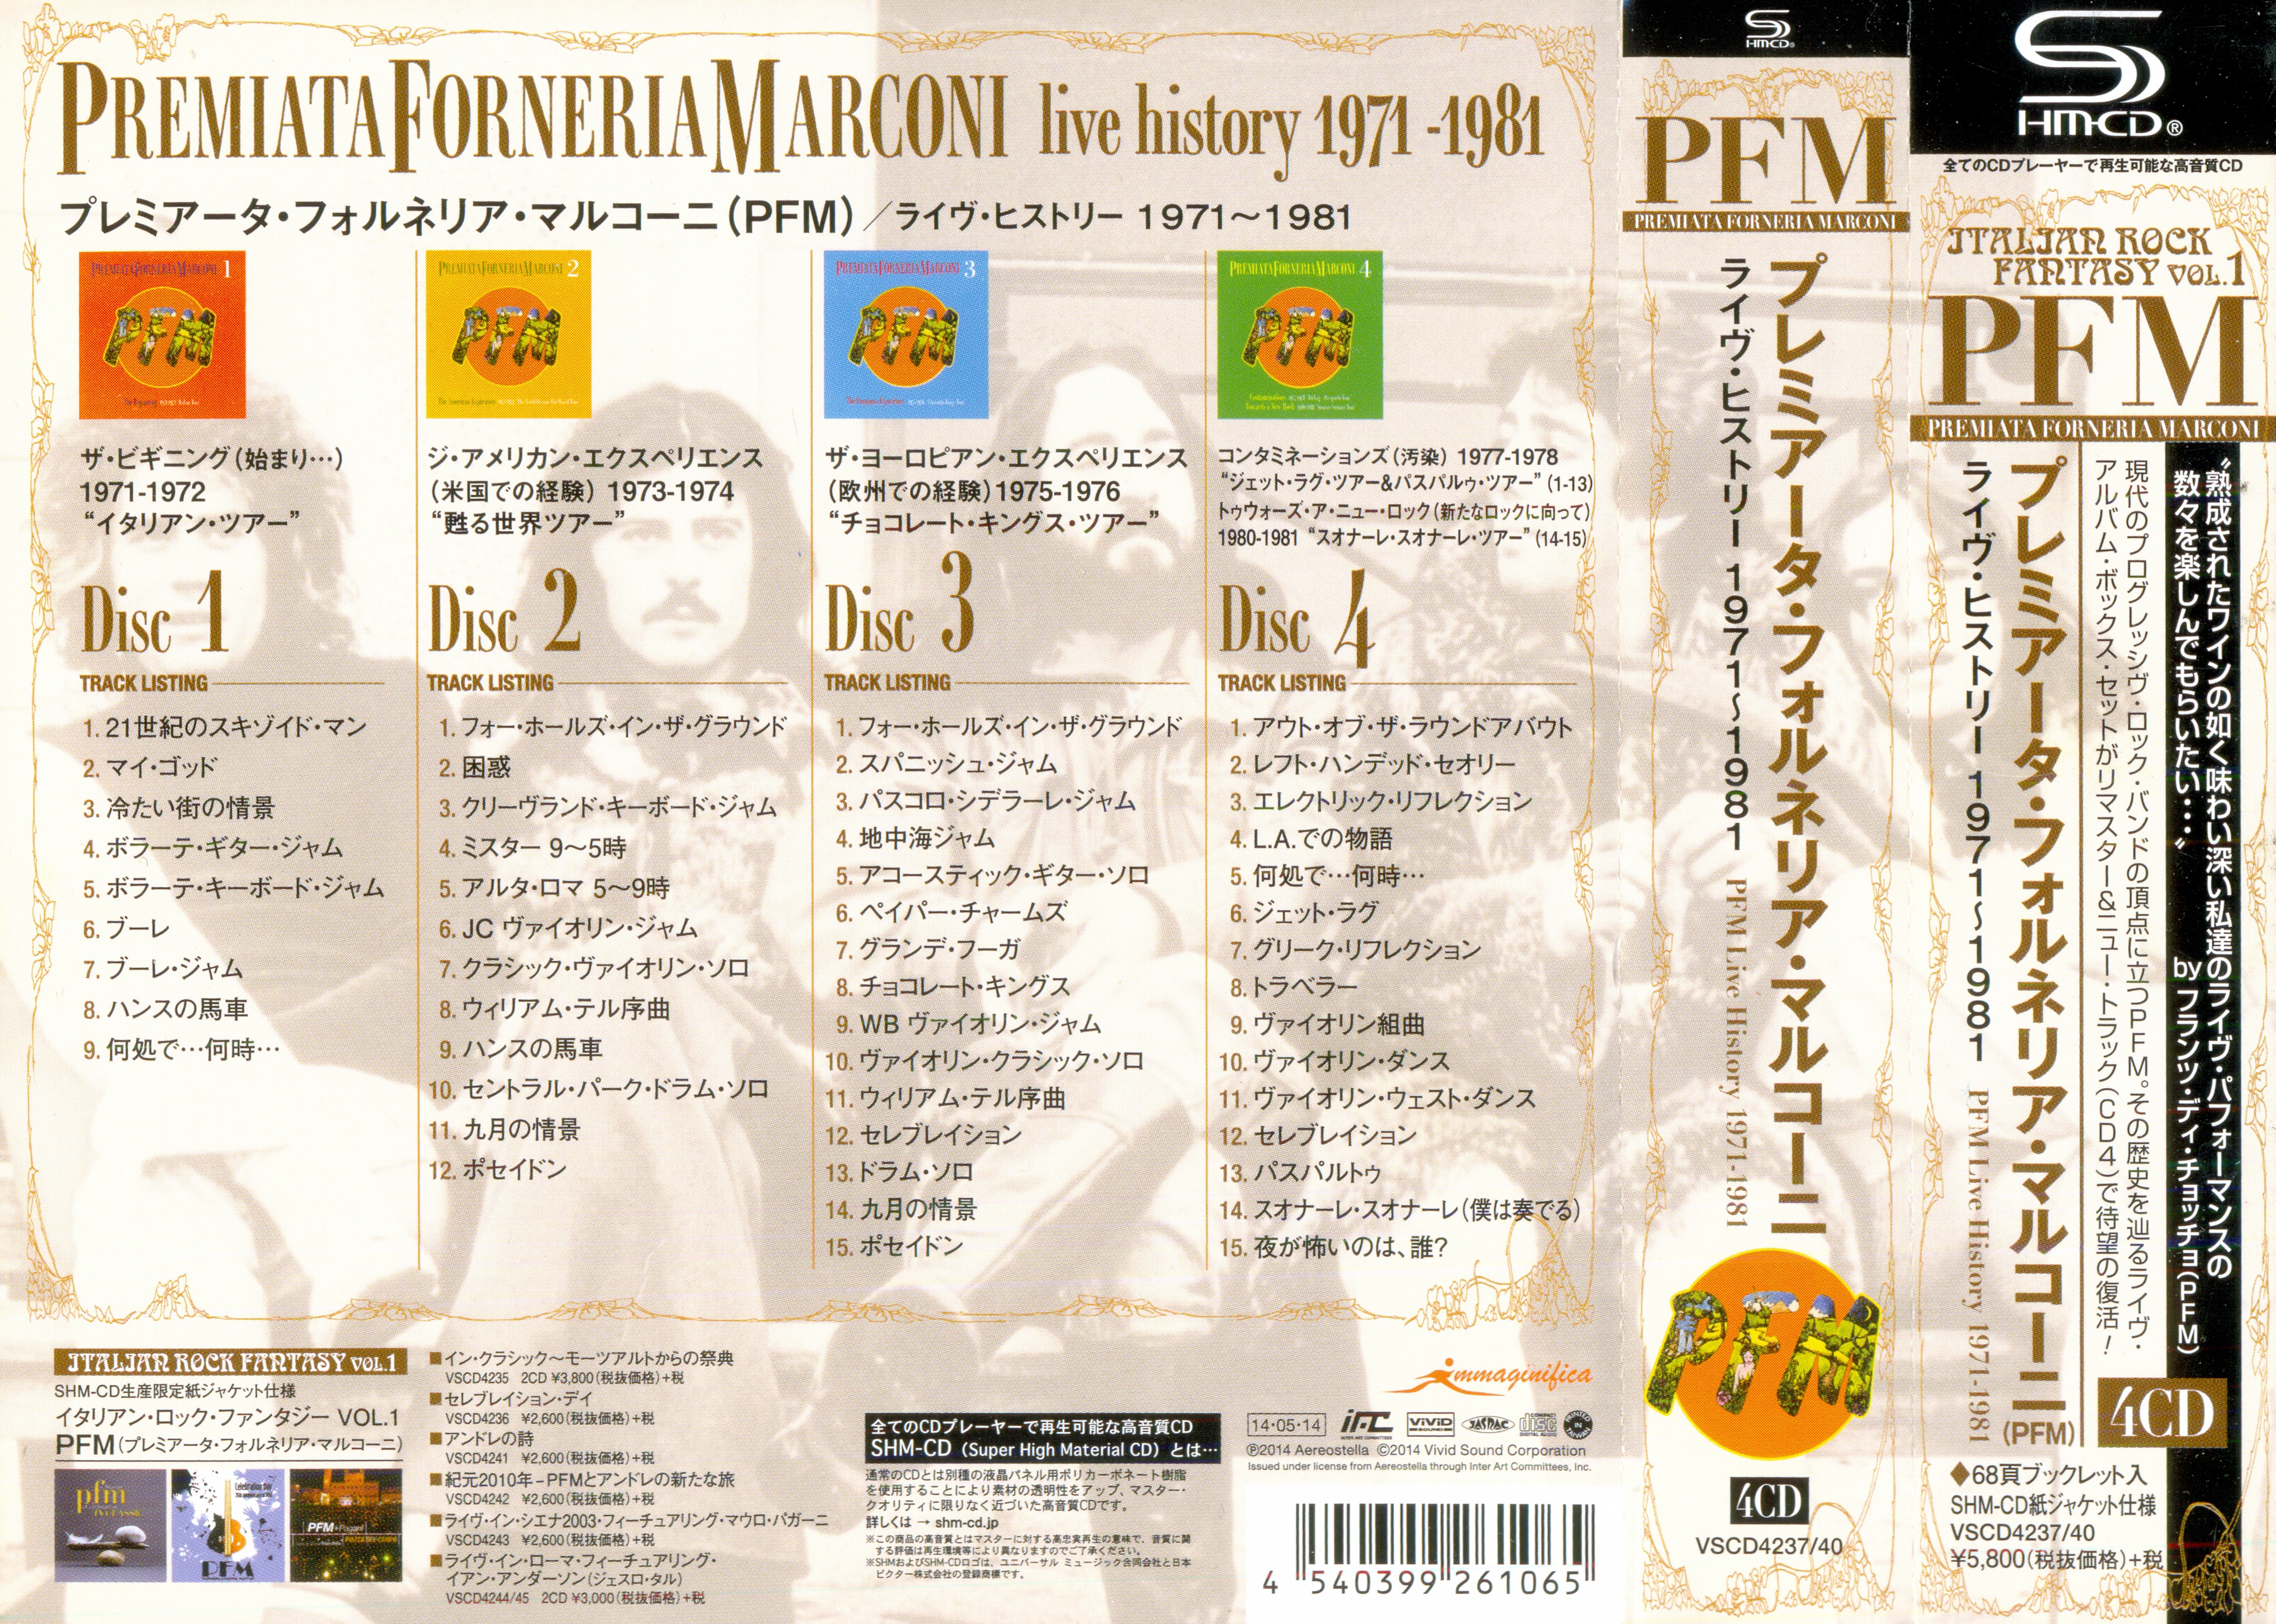 Release “Live History 1971-1981” by Premiata Forneria Marconi